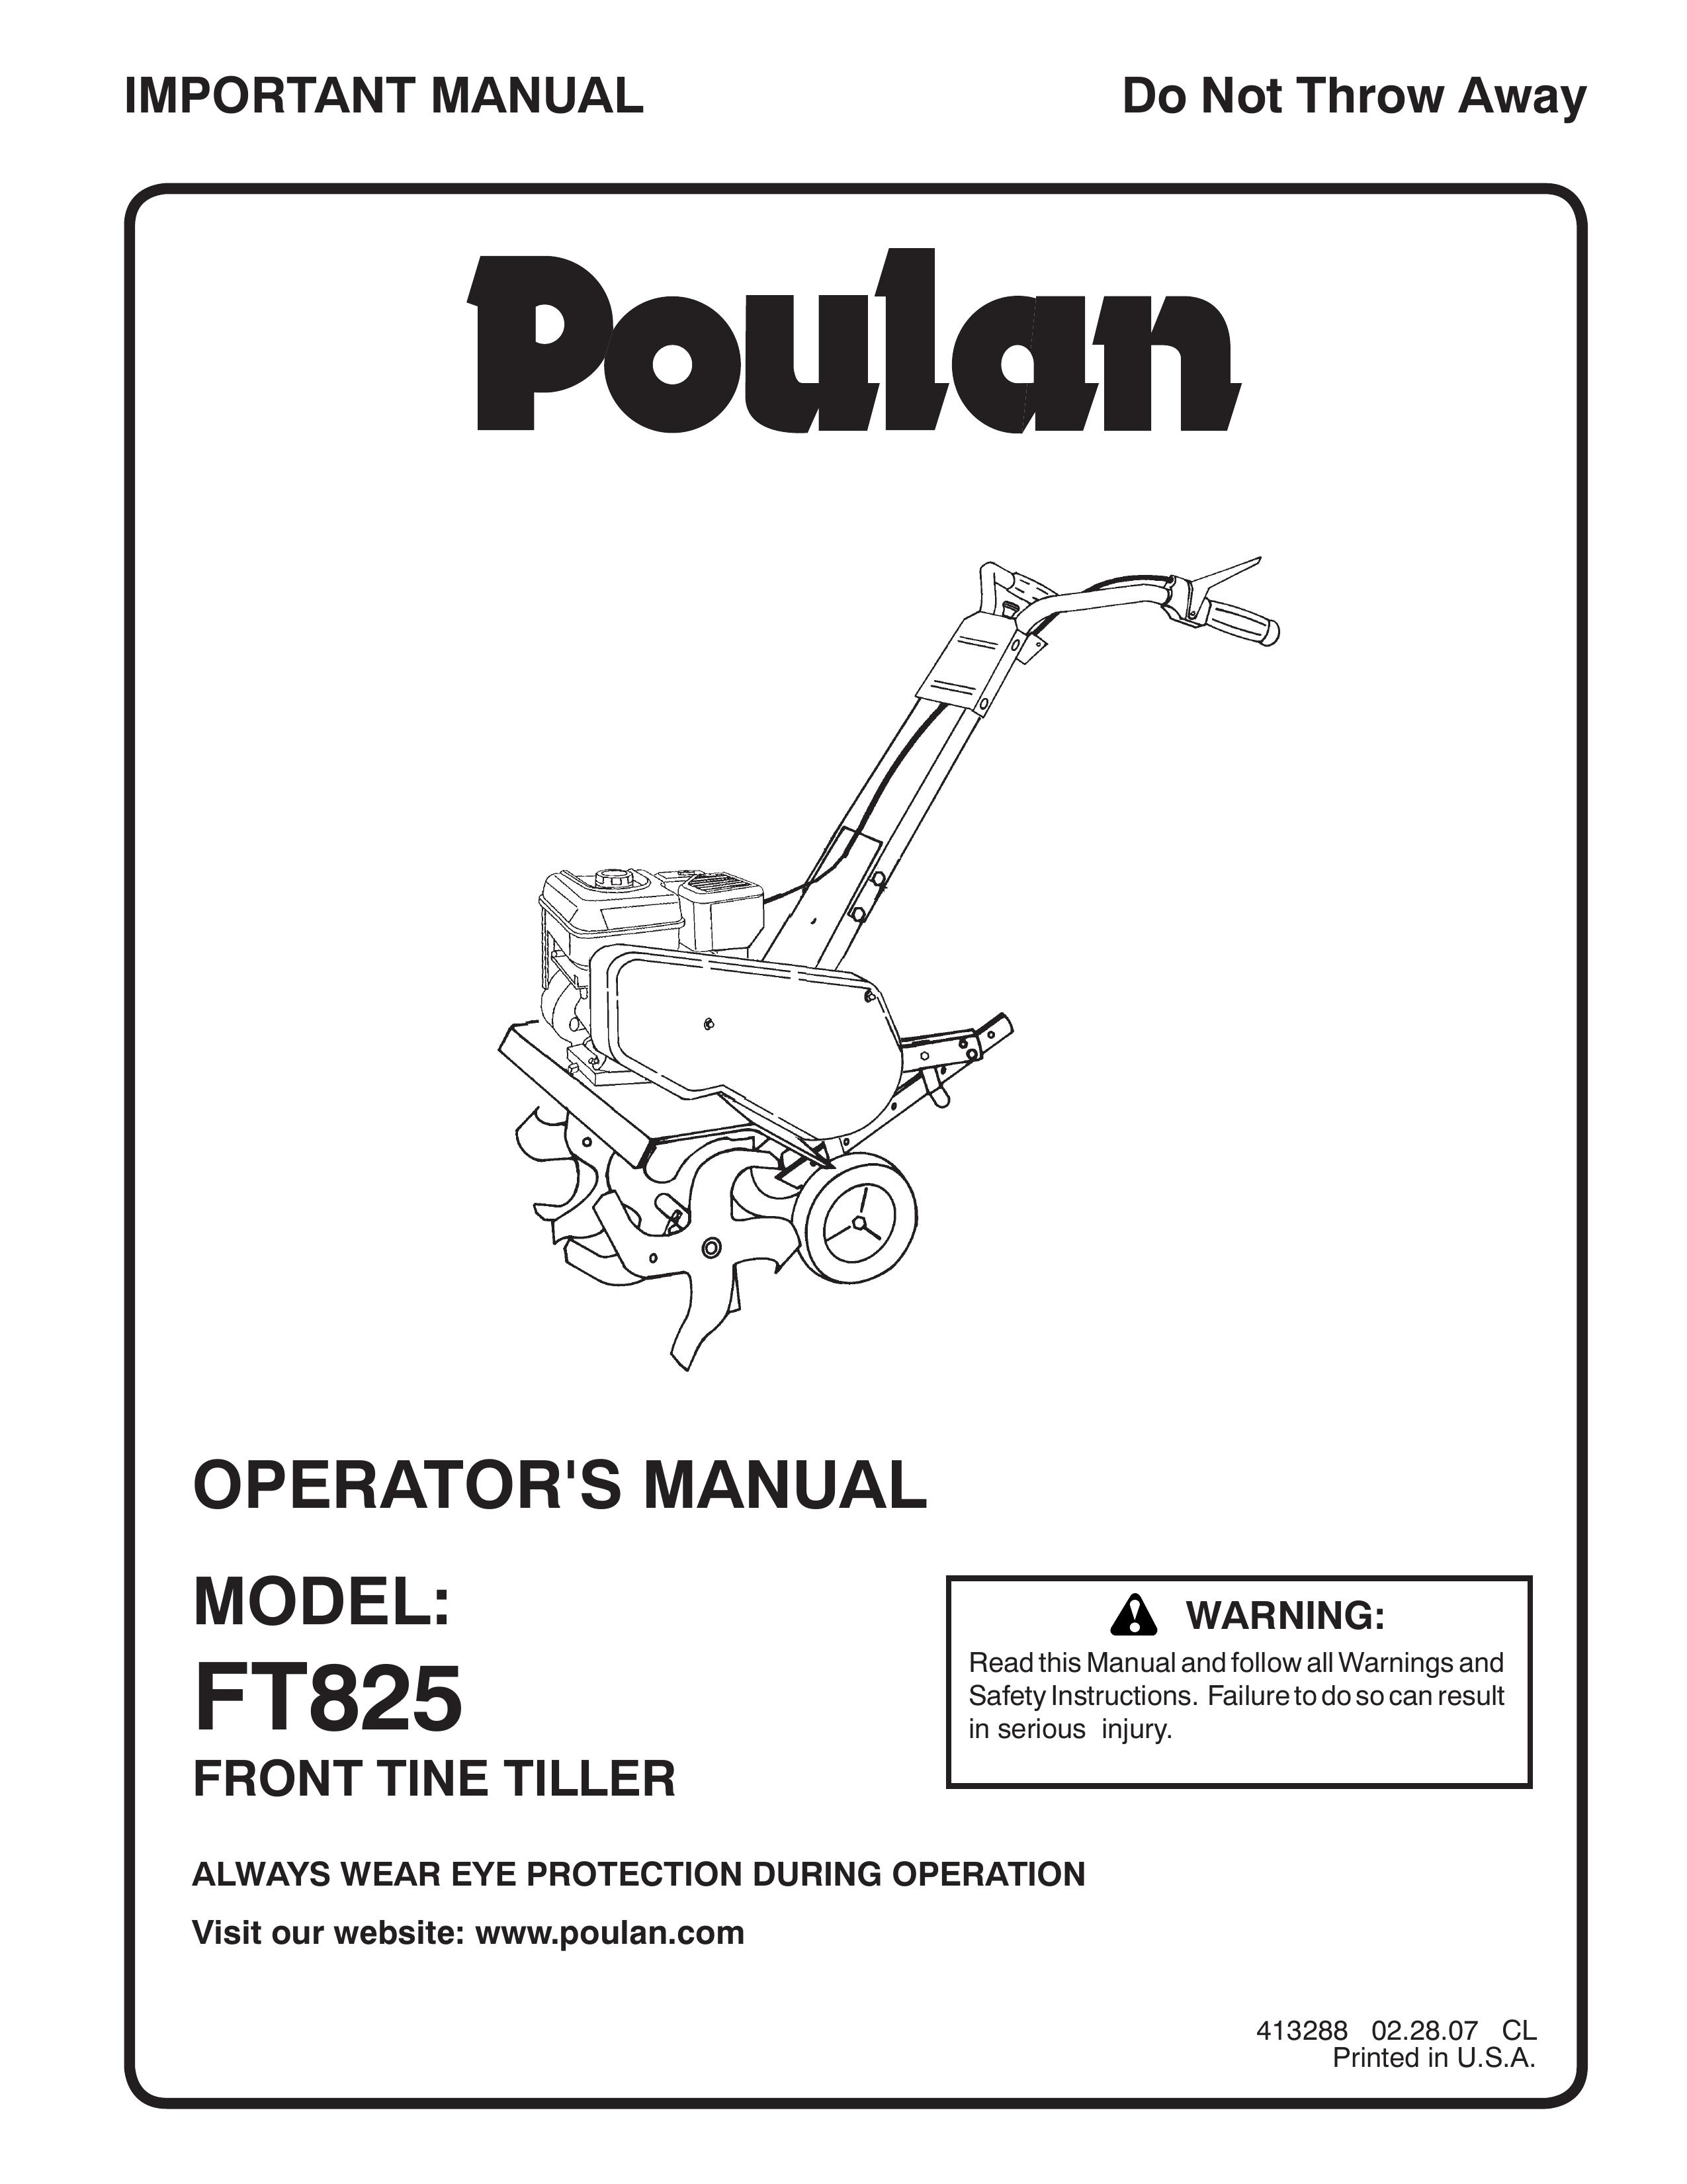 Poulan 413288 Tiller User Manual